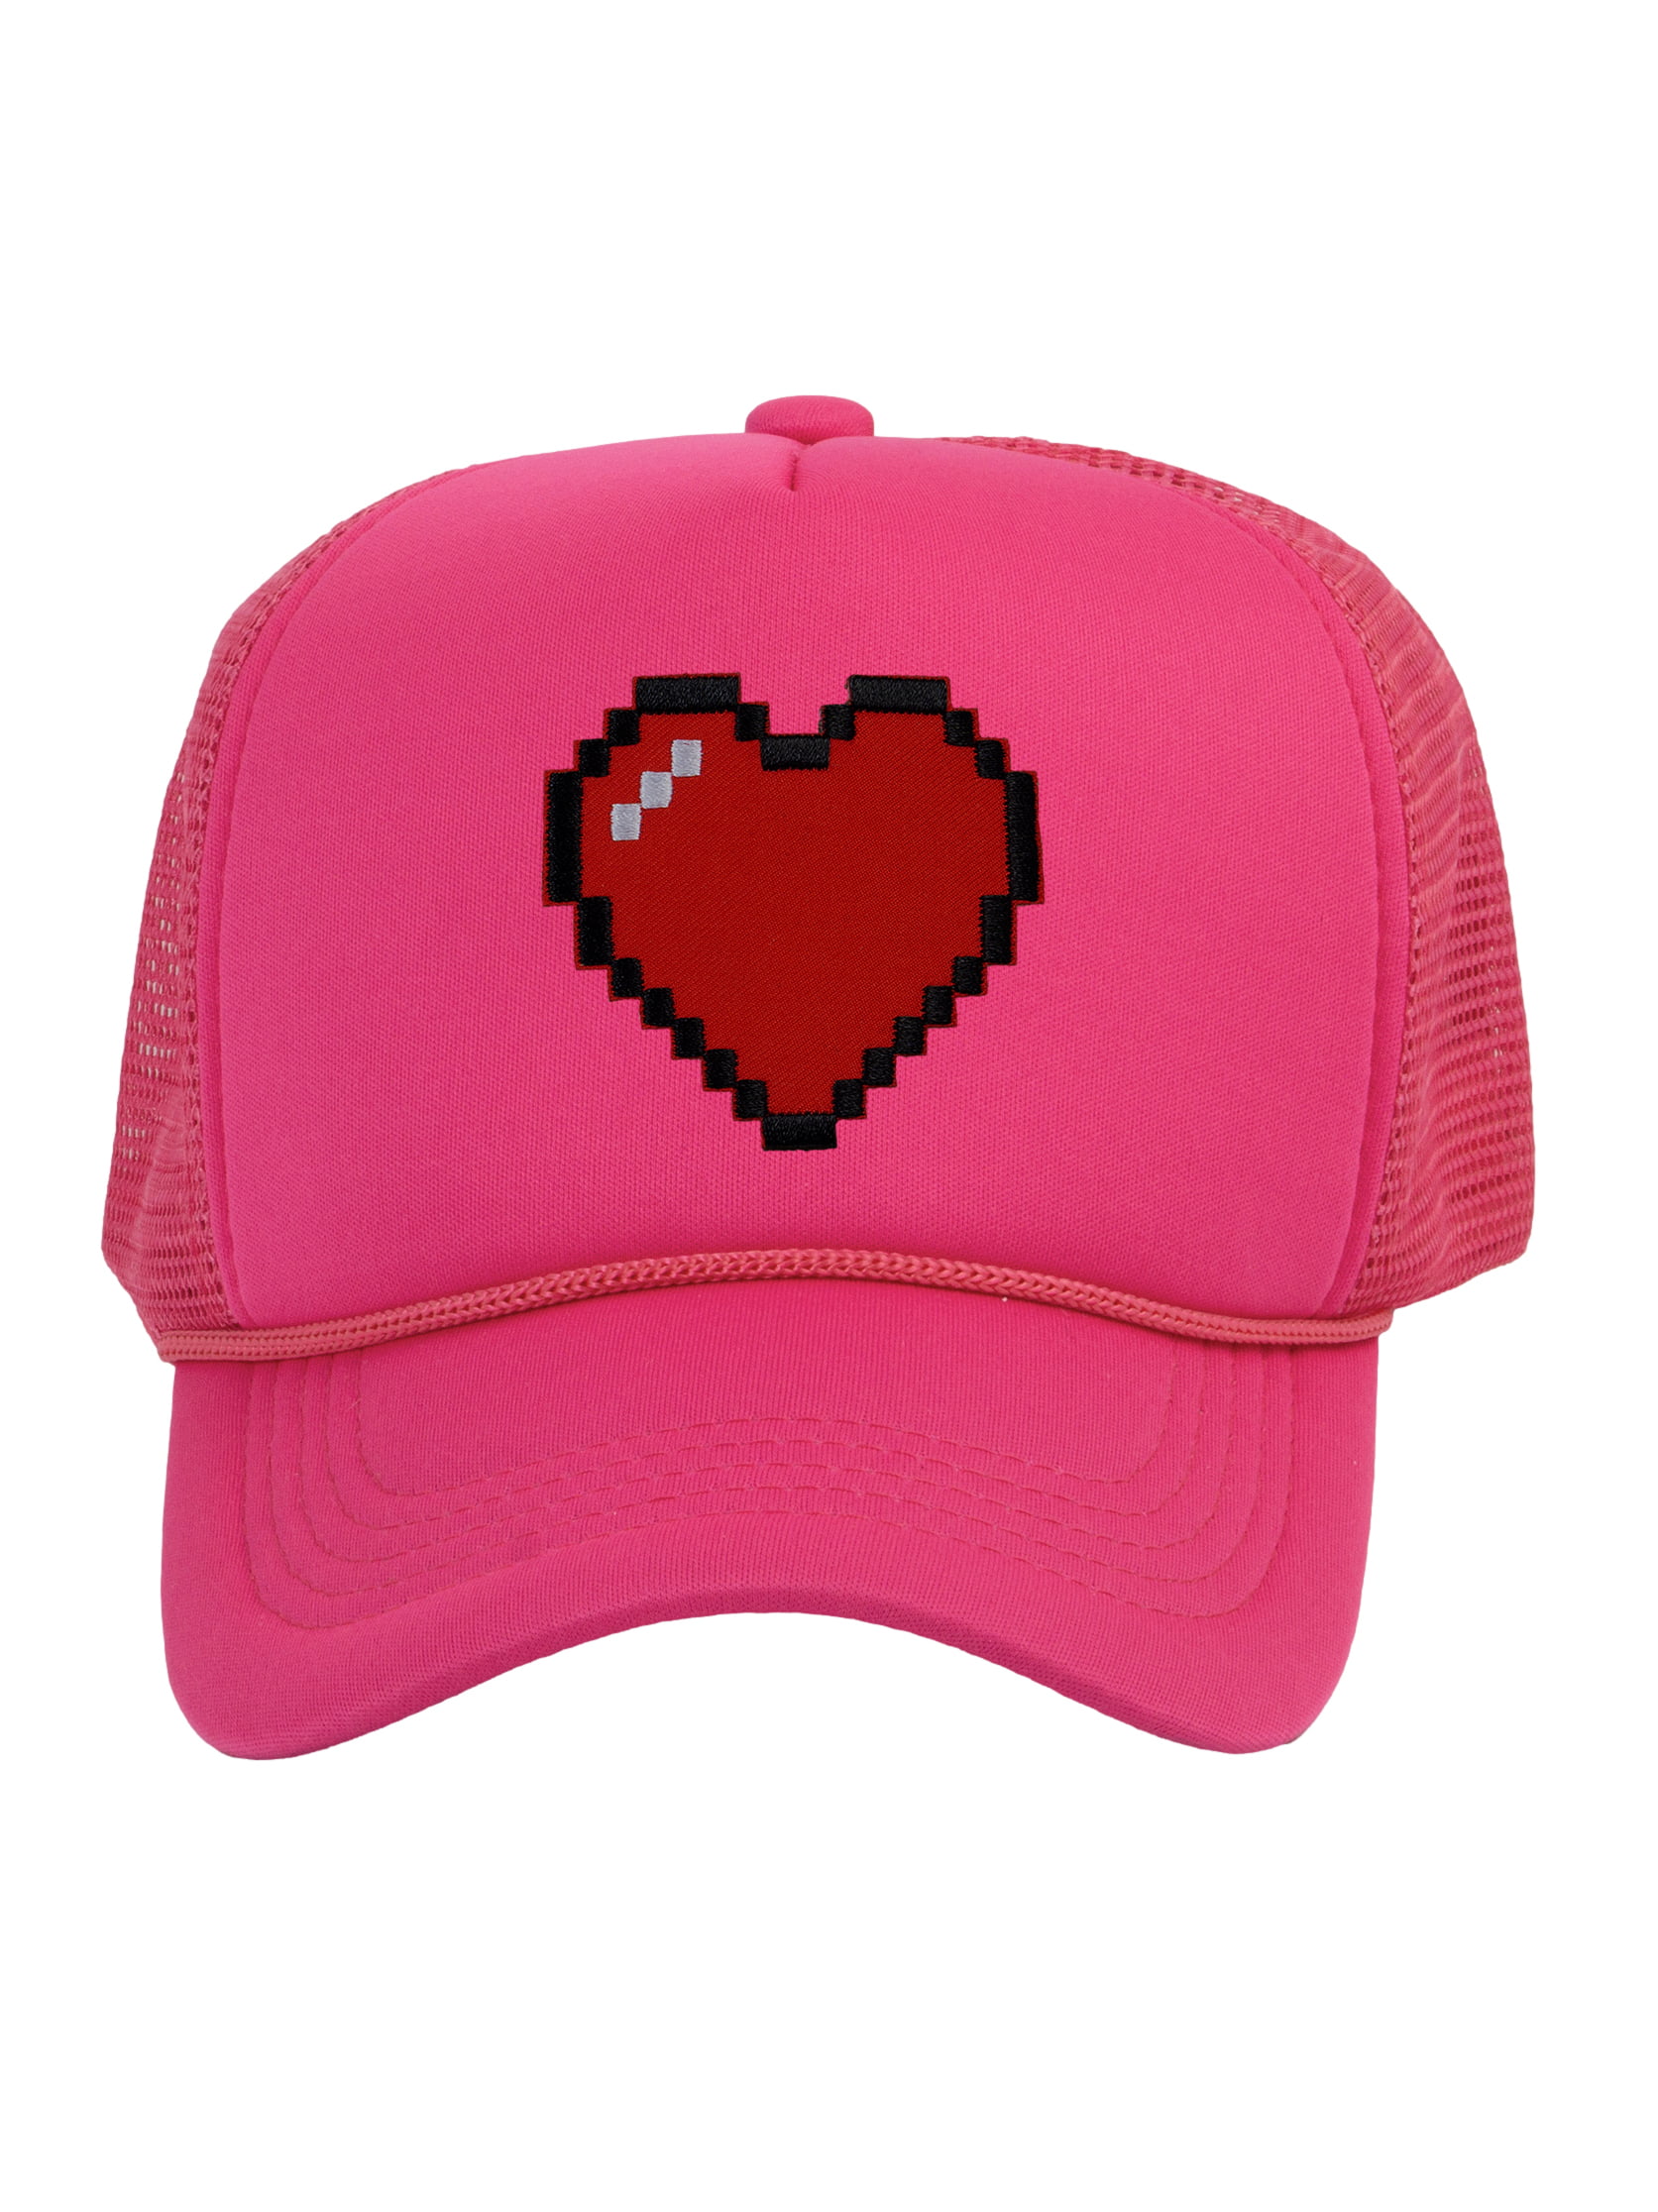 Men\'s 80\'s Retro Large 8 Bit Pixelated Heart Gamer Trucker Hat, Red